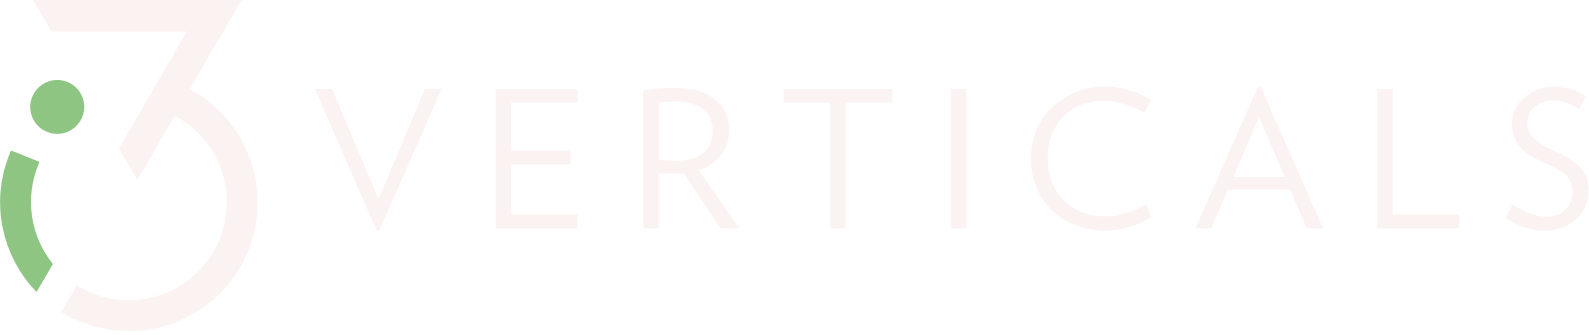 i3 Verticals logo large for dark backgrounds (transparent PNG)